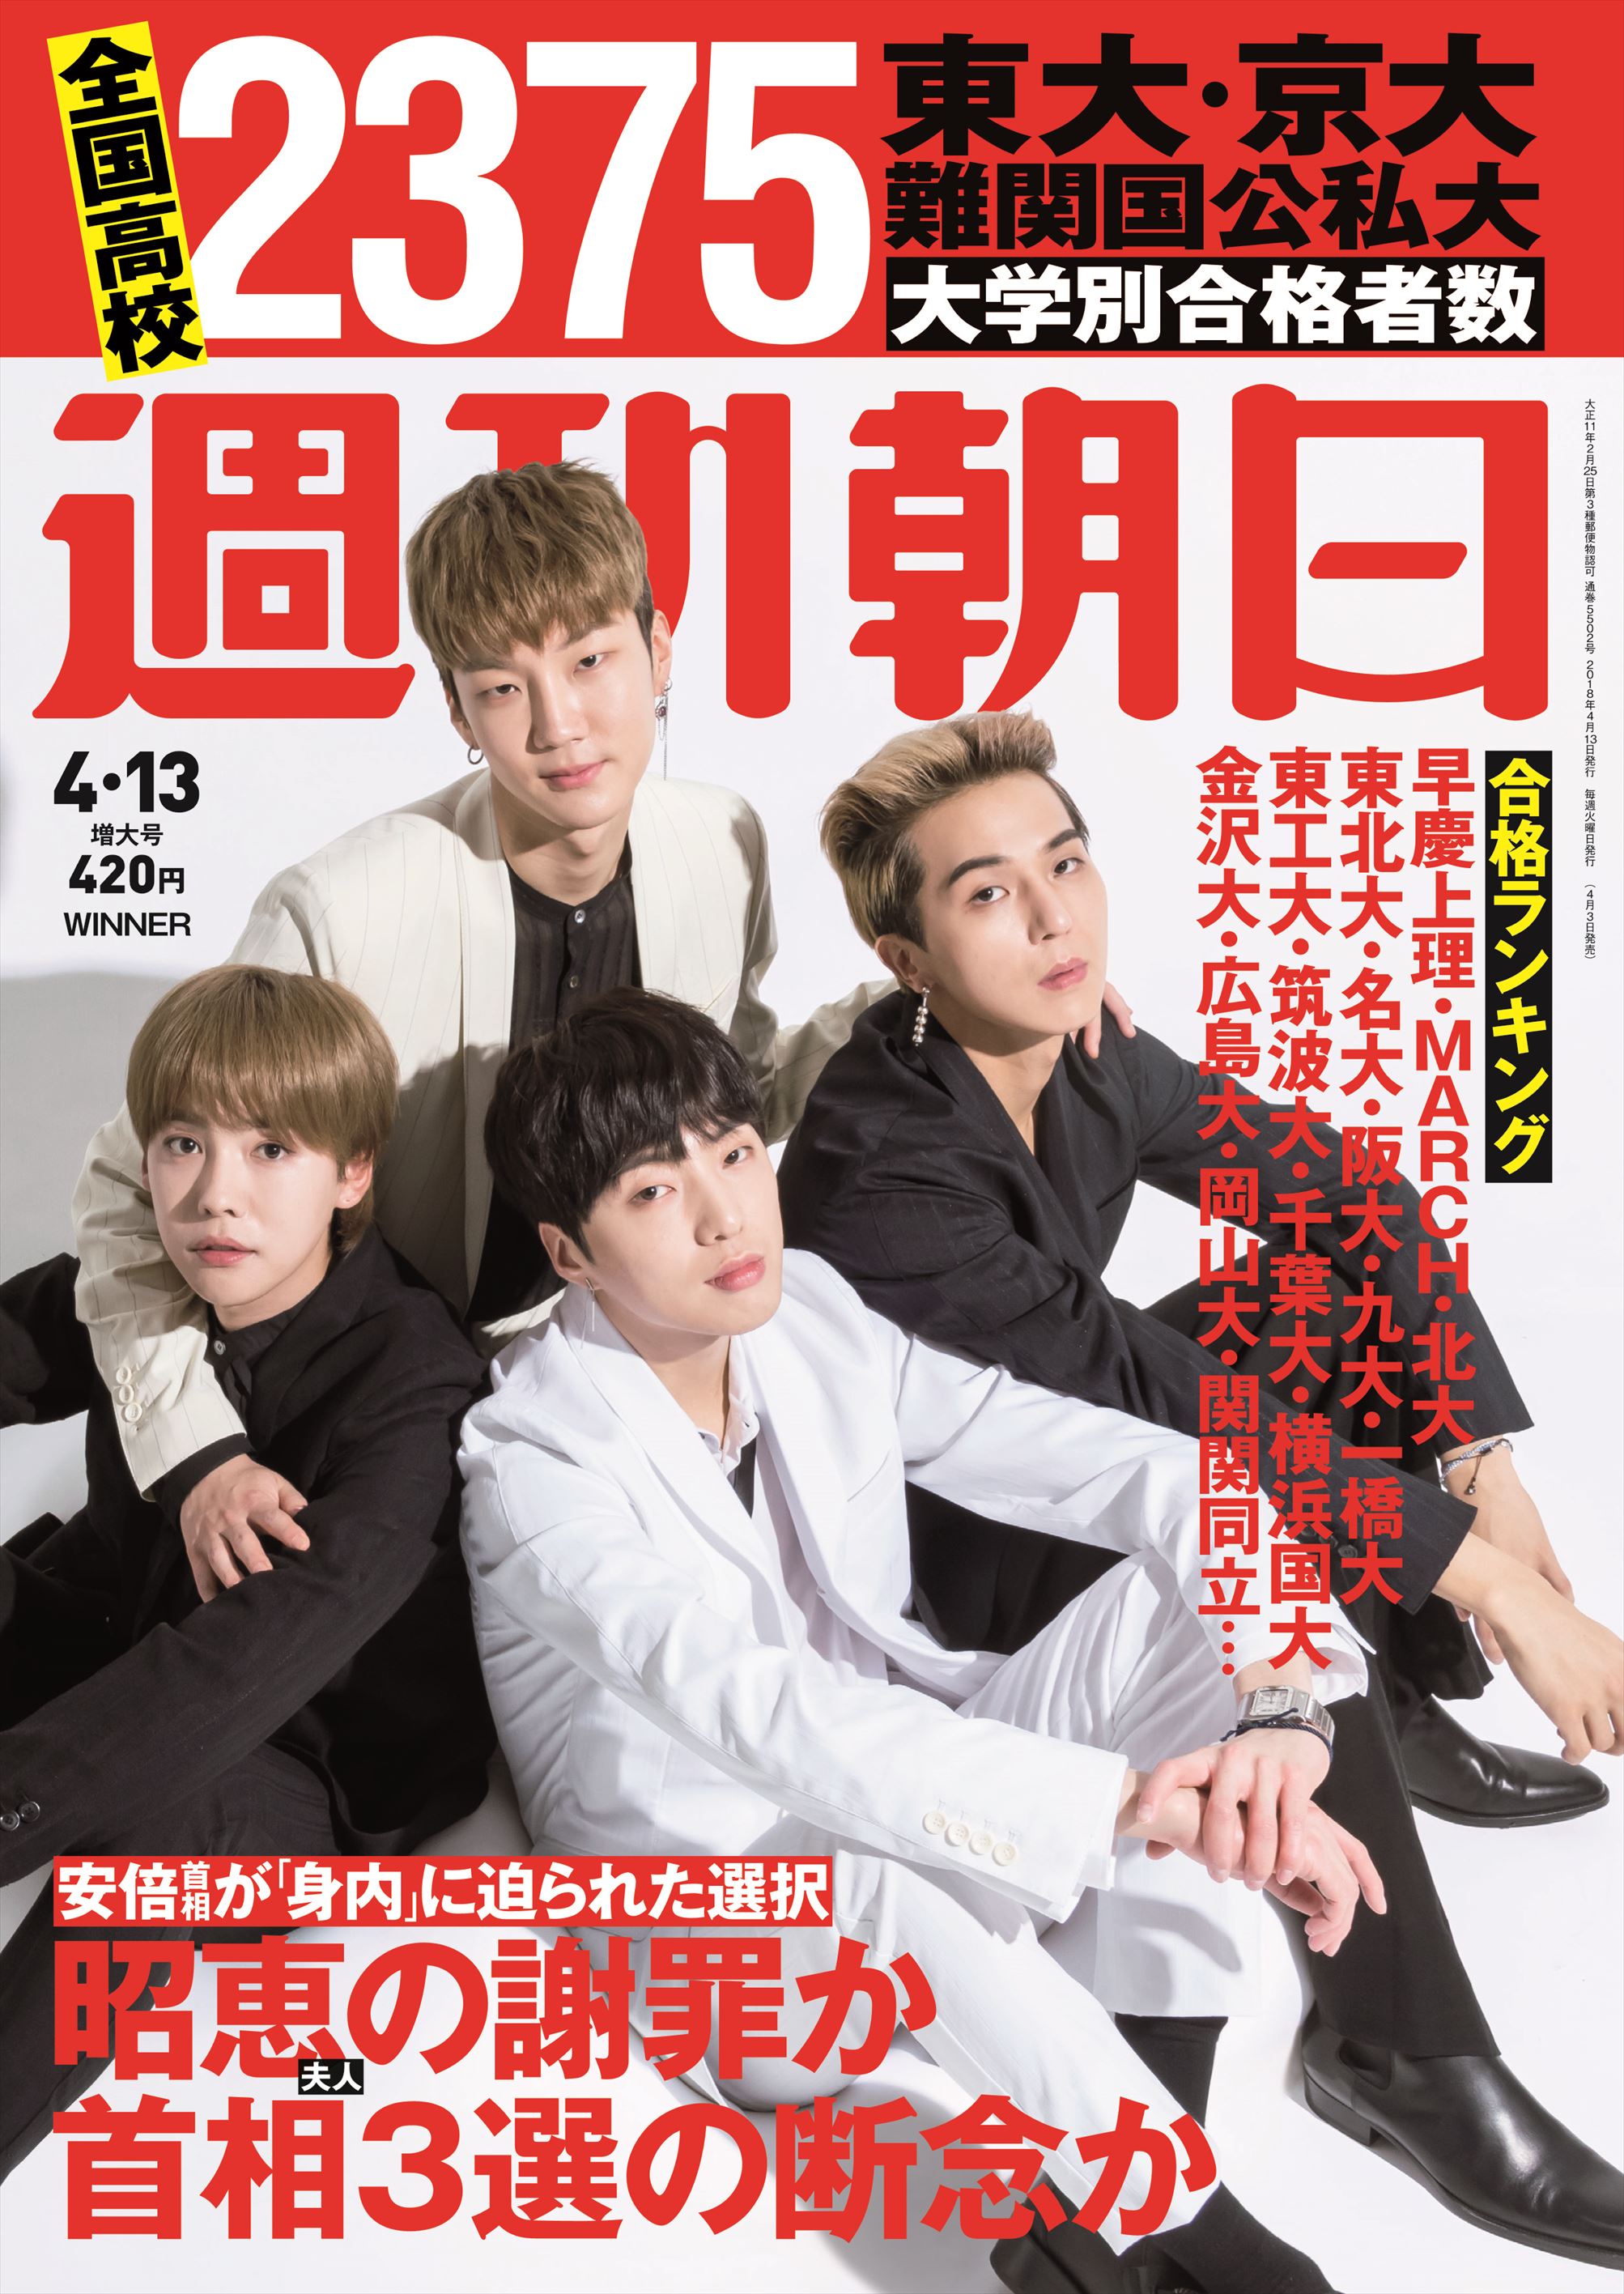 韓国出身のグループ「WINNER」が週刊朝日に登場。グループの強みや長所を語る